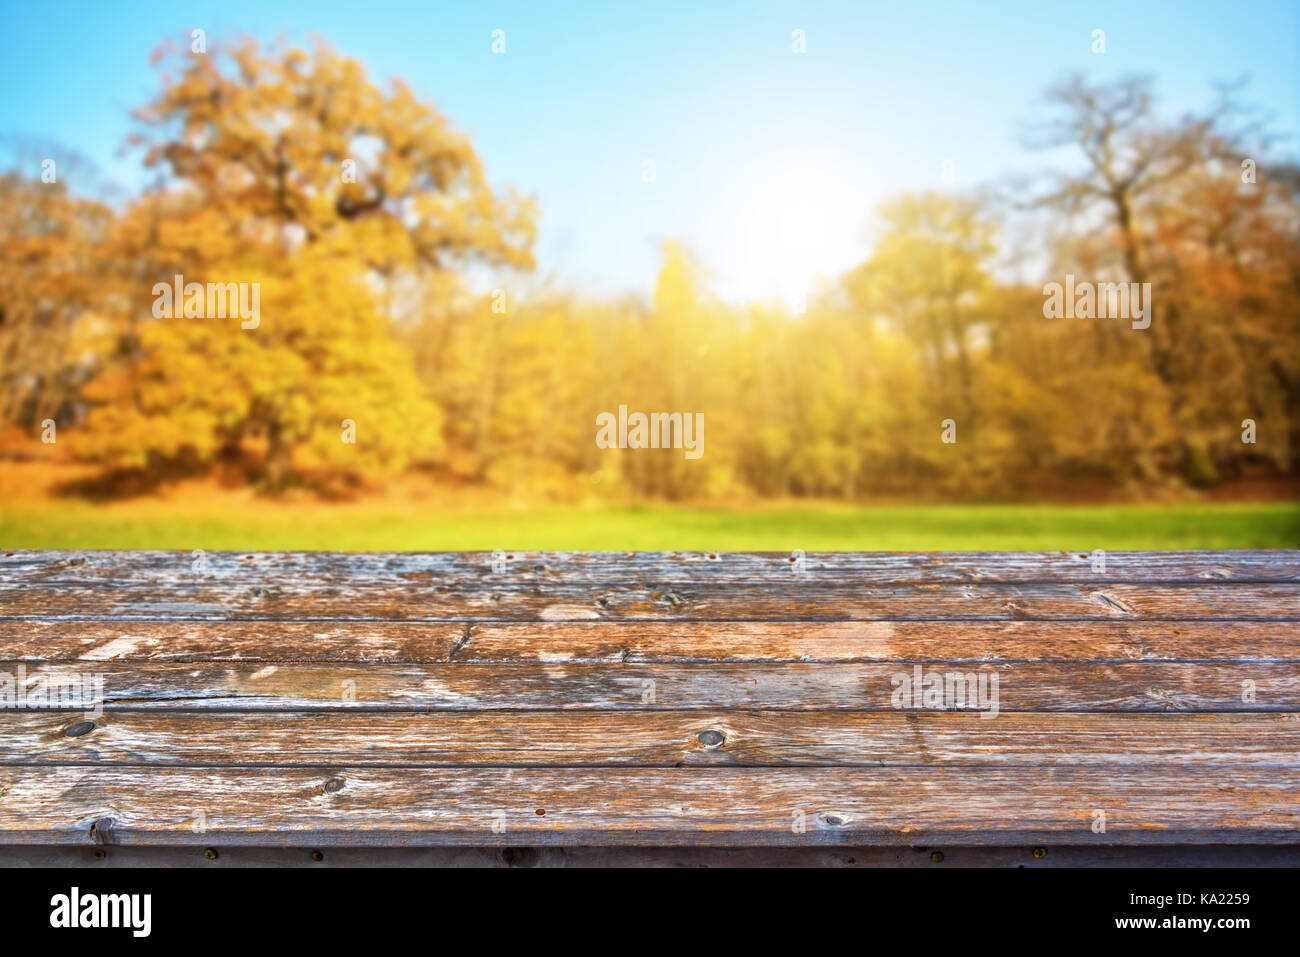 Table en bois vide haut, forêt en automne arrière-plan, prêt à utiliser pour l'affichage ou un montage de vos produits Banque D'Images